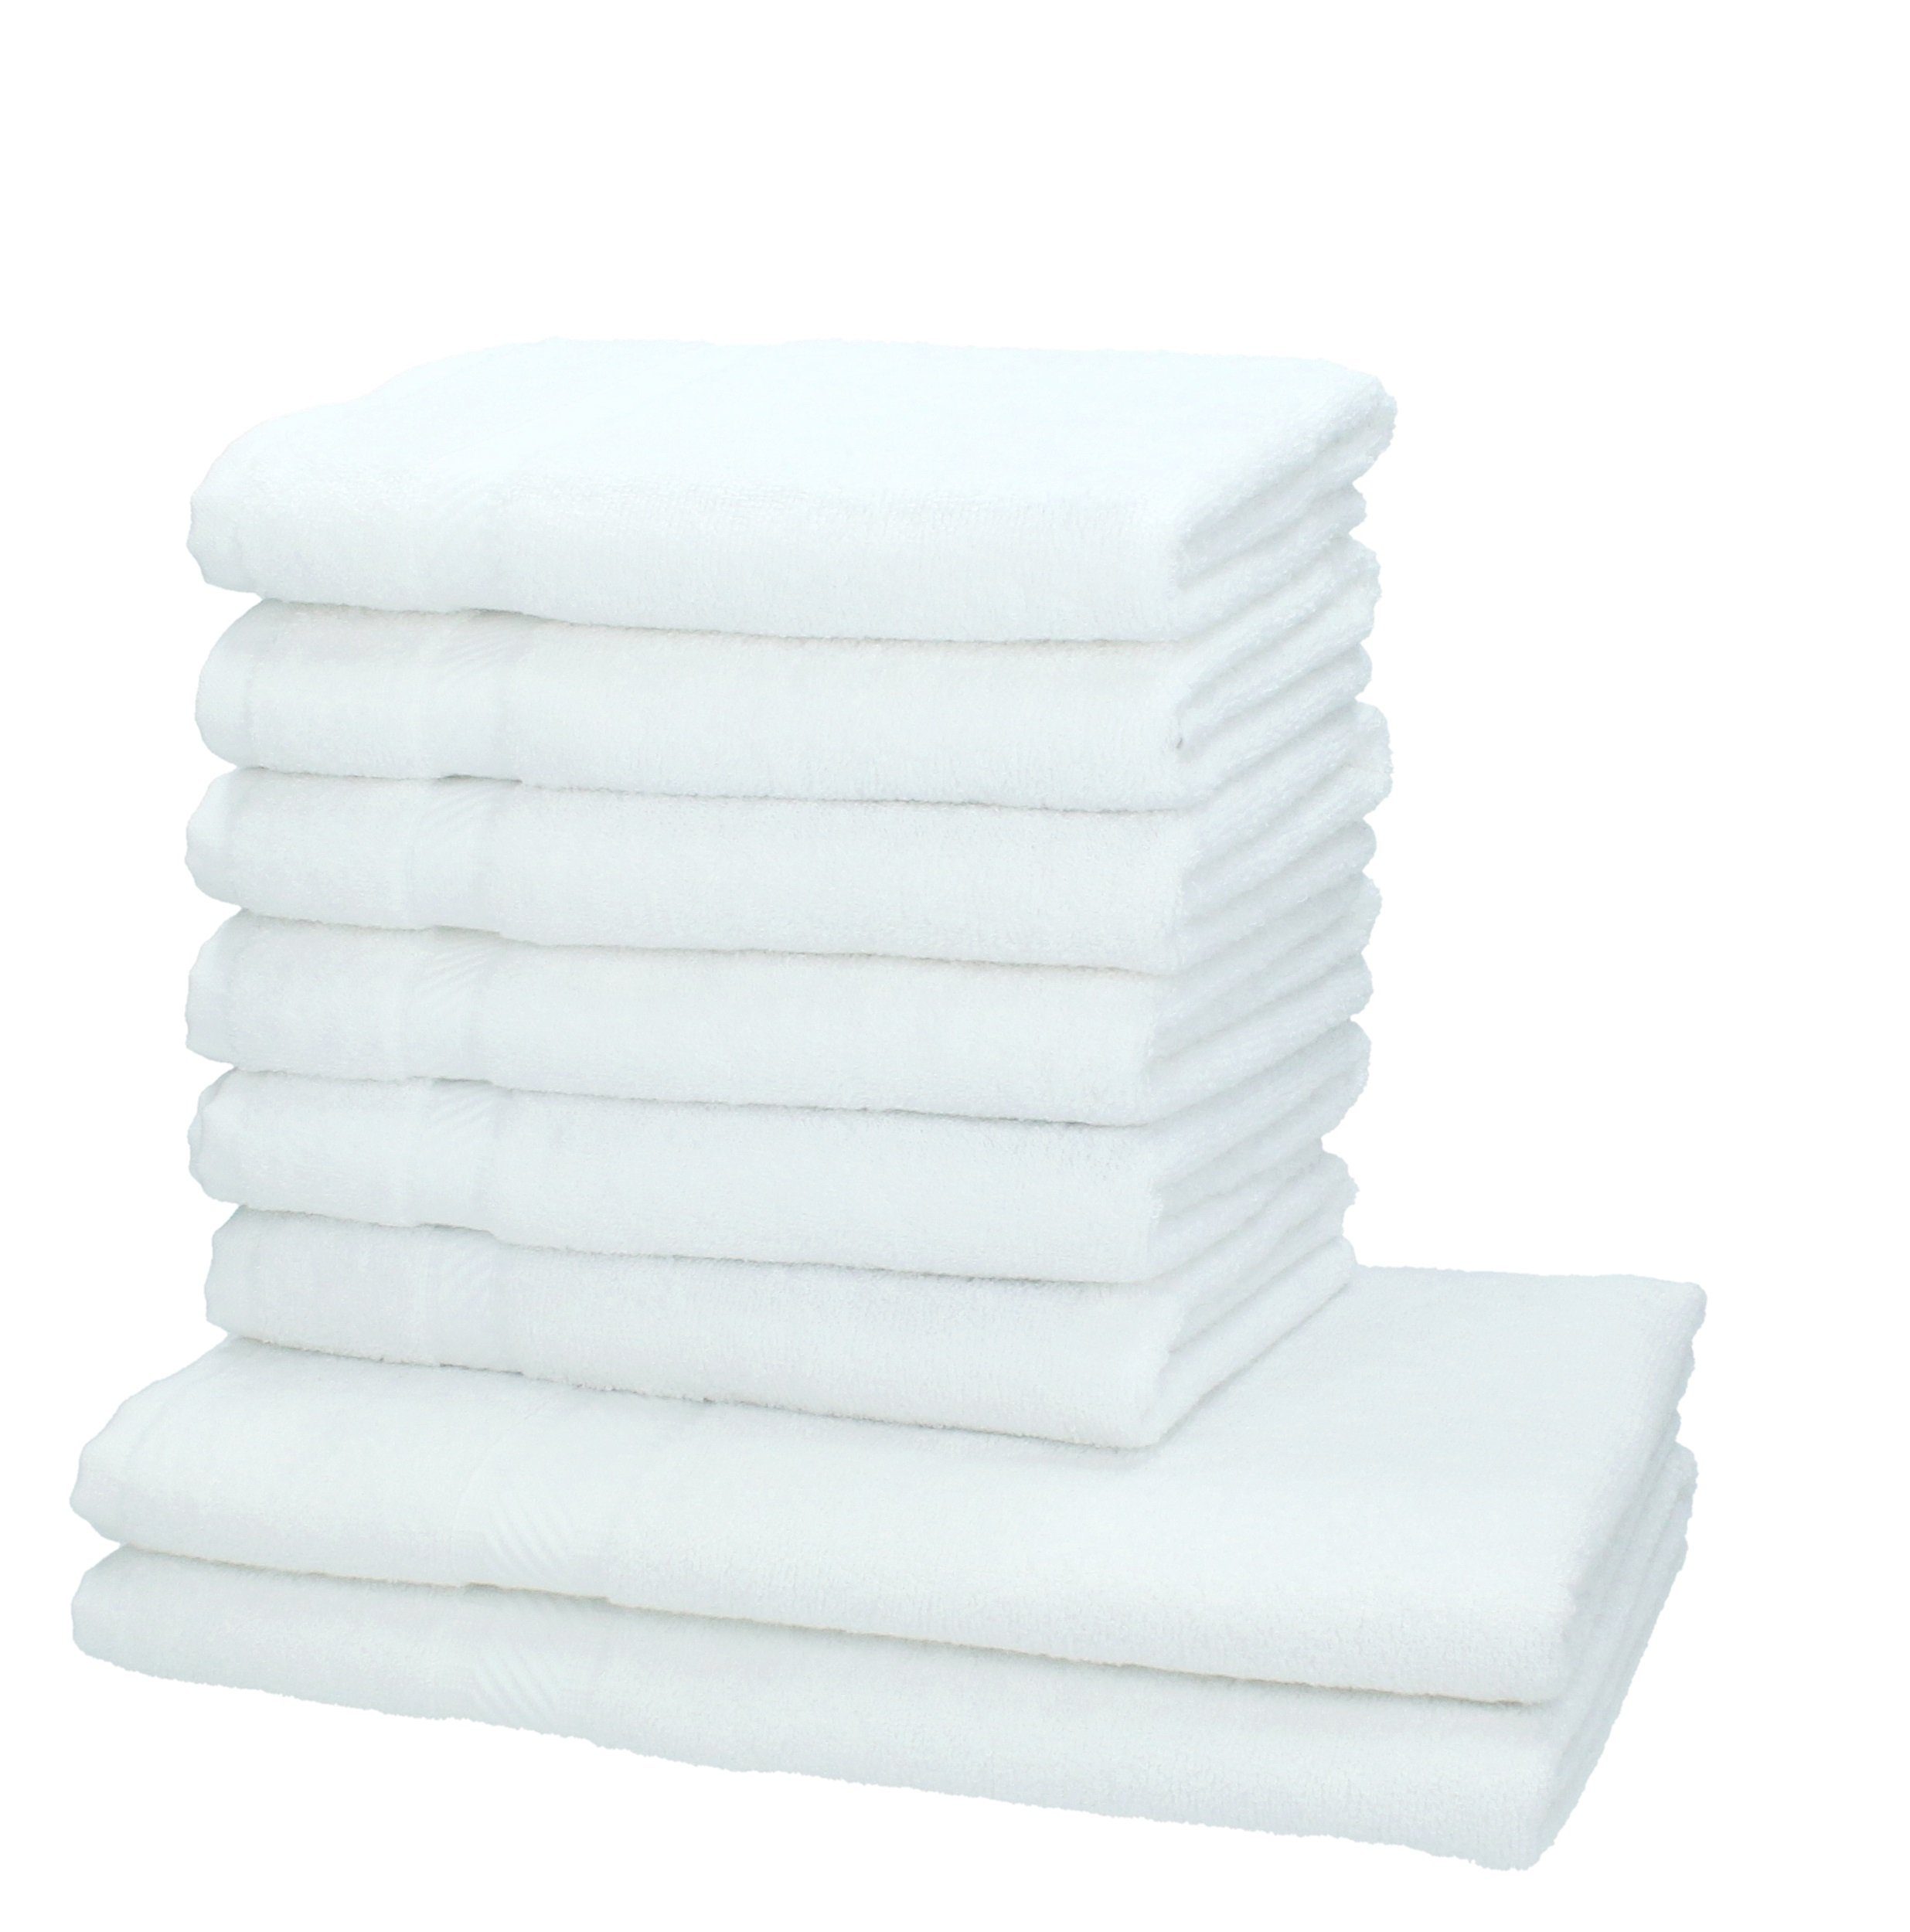 Betz Handtuch Set 8-tlg. Handtuch-Set Palermo Farbe weiß, 100% Baumwolle